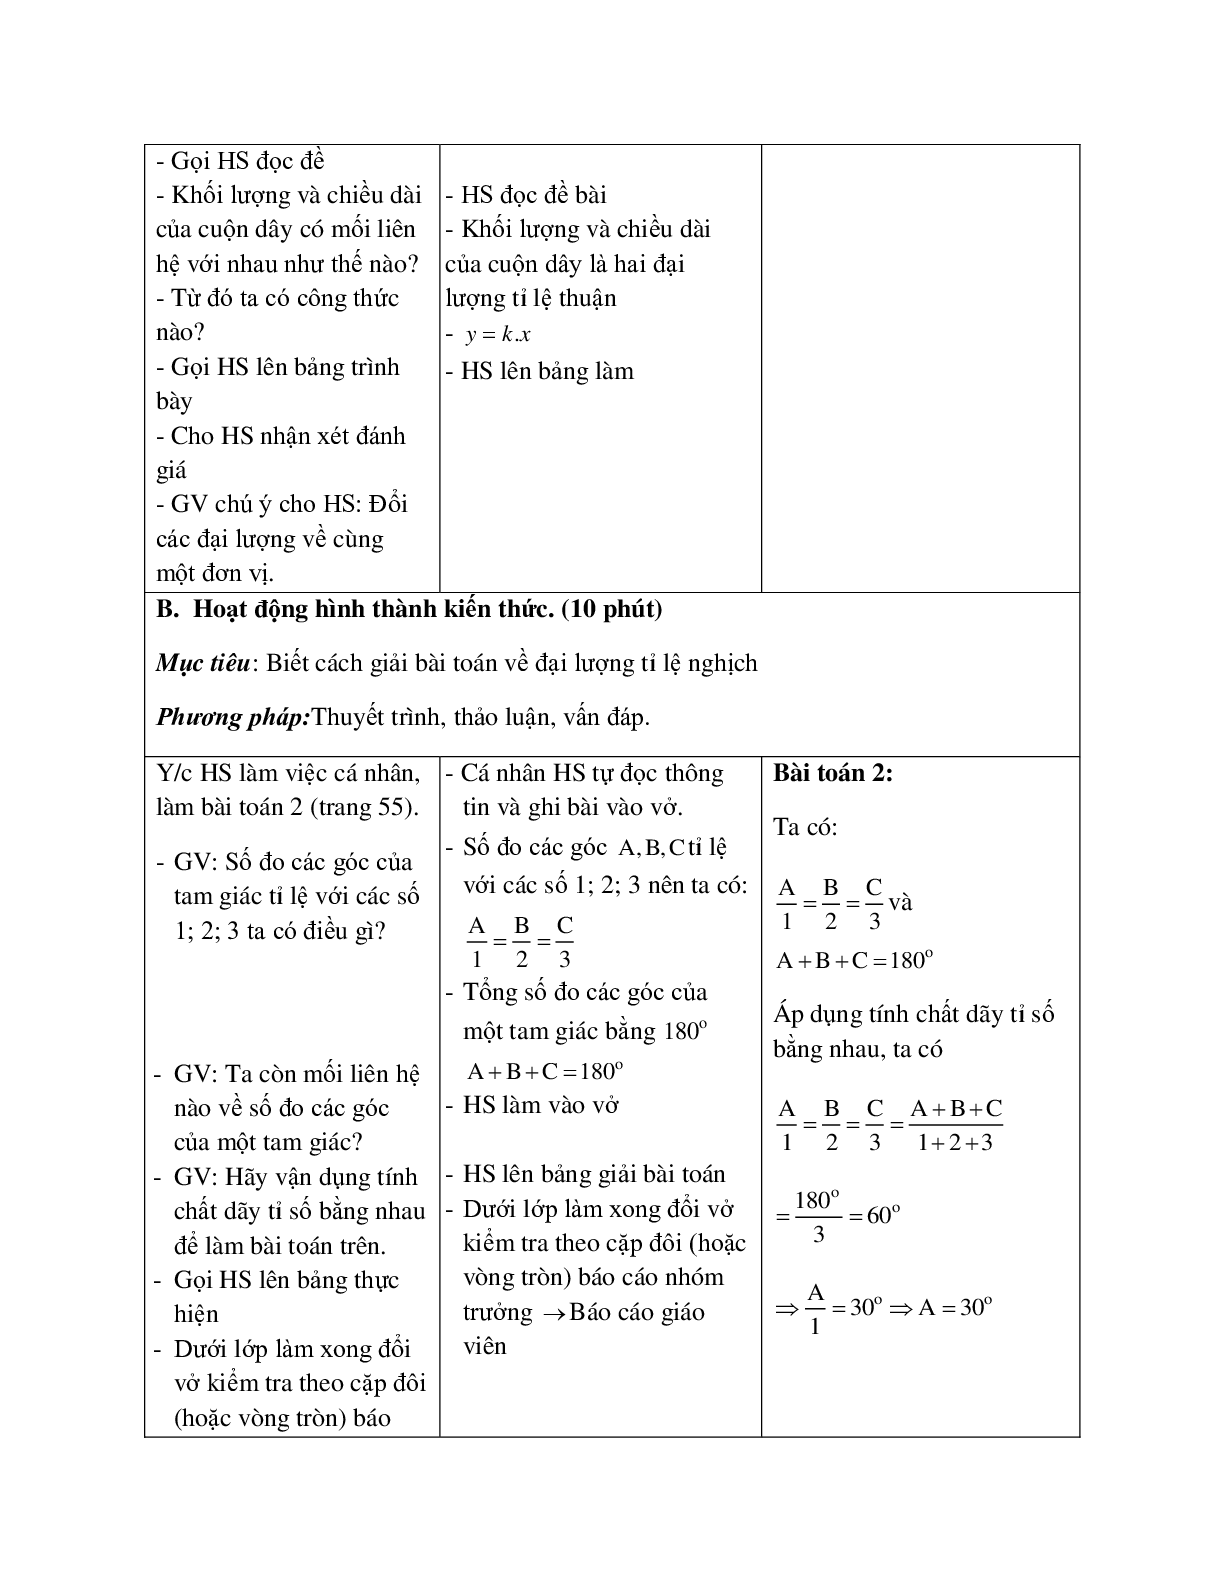 Giáo án Toán học 7 bài 2: Một số bài toán về đại lượng tỉ lệ thuận hay nhất (trang 6)